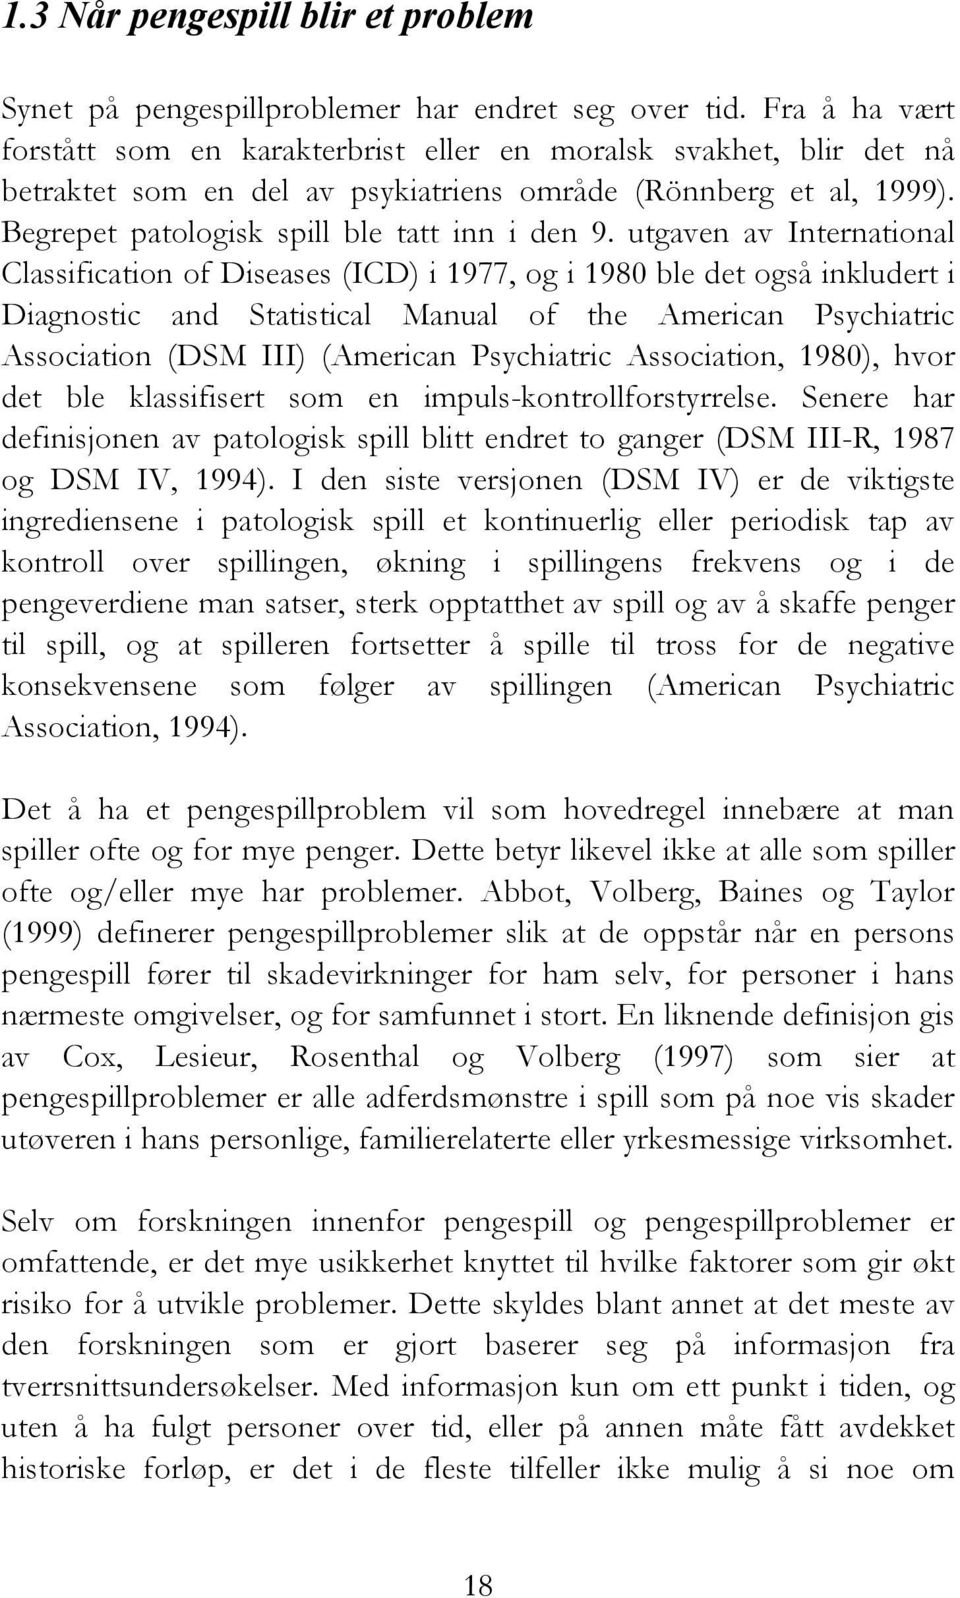 utgaven av International Classification of Diseases (ICD) i 1977, og i 1980 ble det også inkludert i Diagnostic and Statistical Manual of the American Psychiatric Association (DSM III) (American